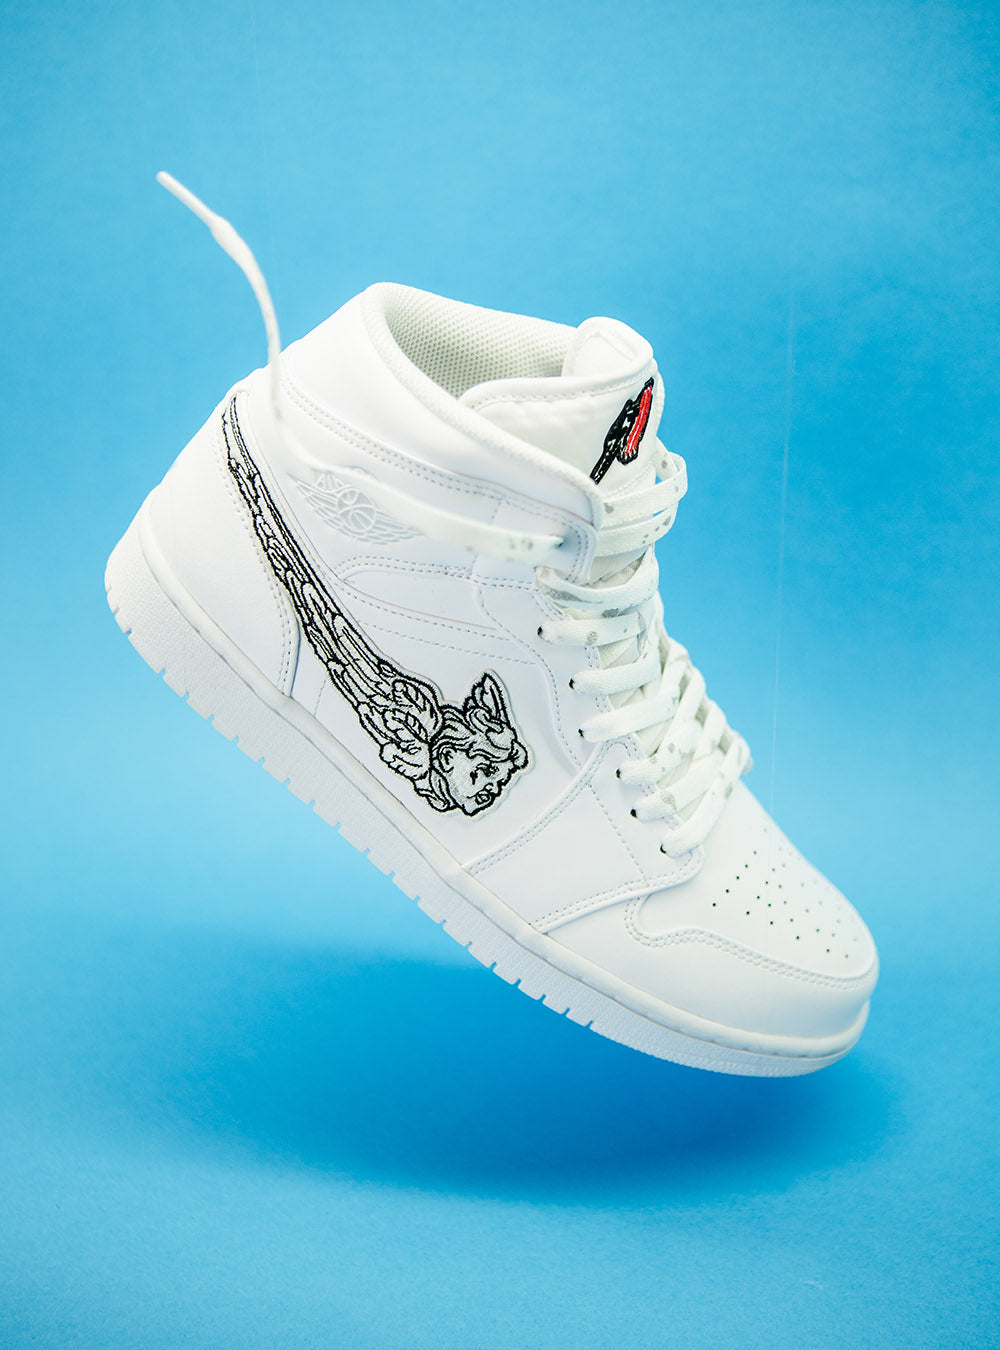 Custom White Lv Jordan 1  Shop customised jordans – Mrskicks